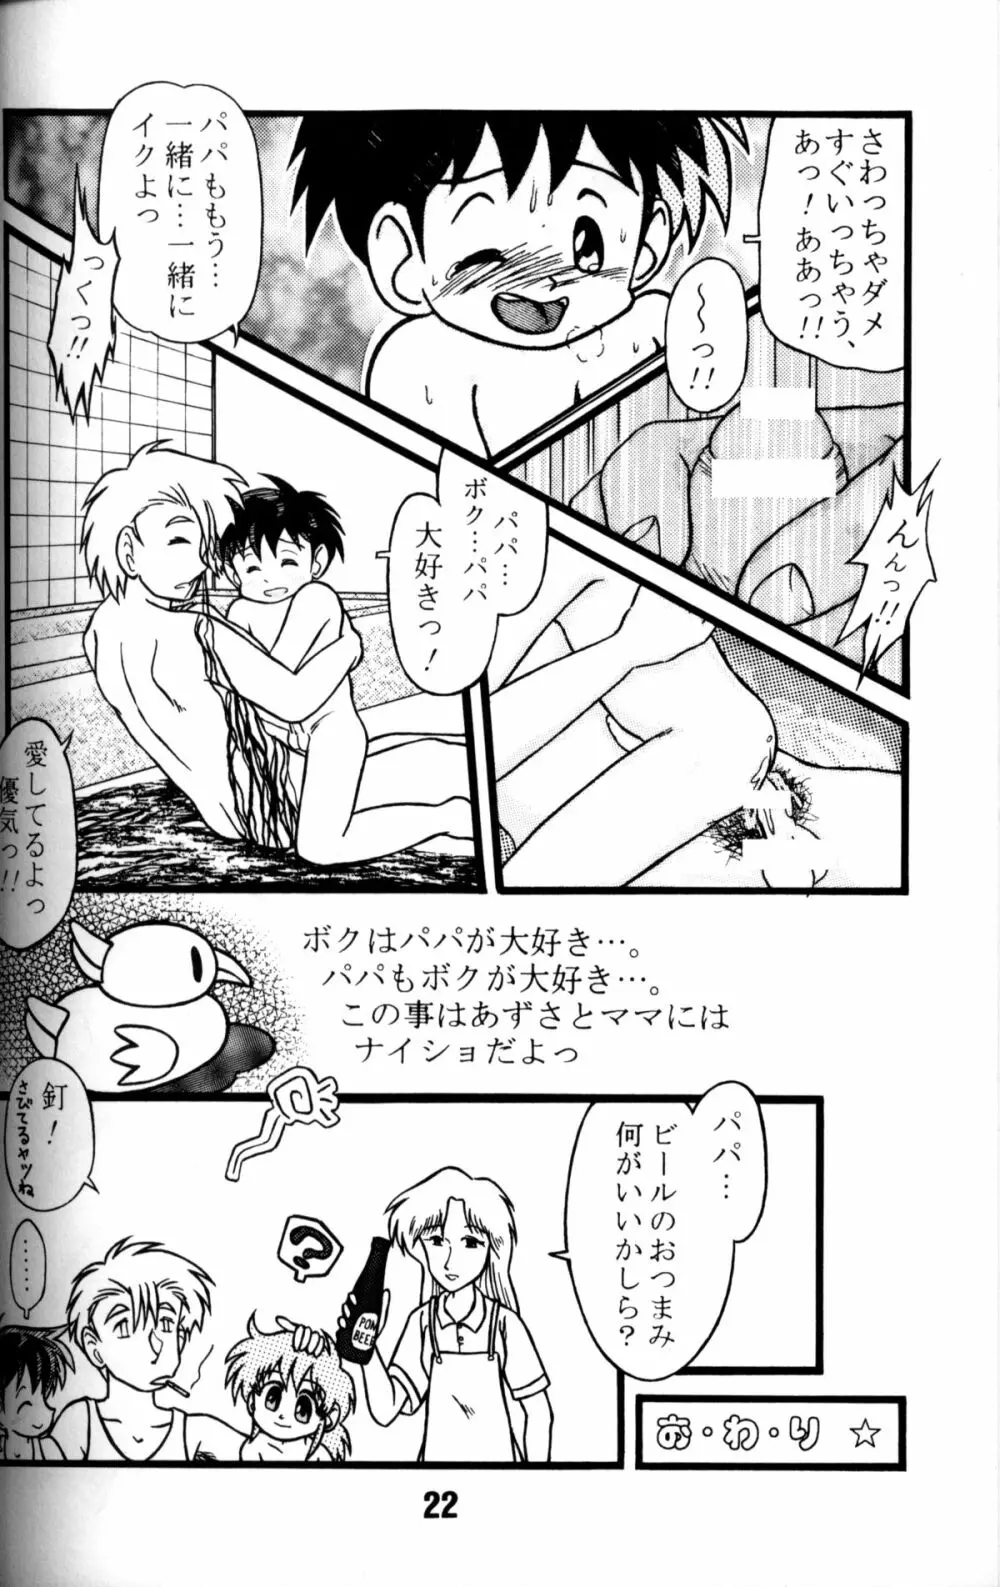 Anthology - Nekketsu Project - Volume 1 'Shounen Banana Milk' Page.21